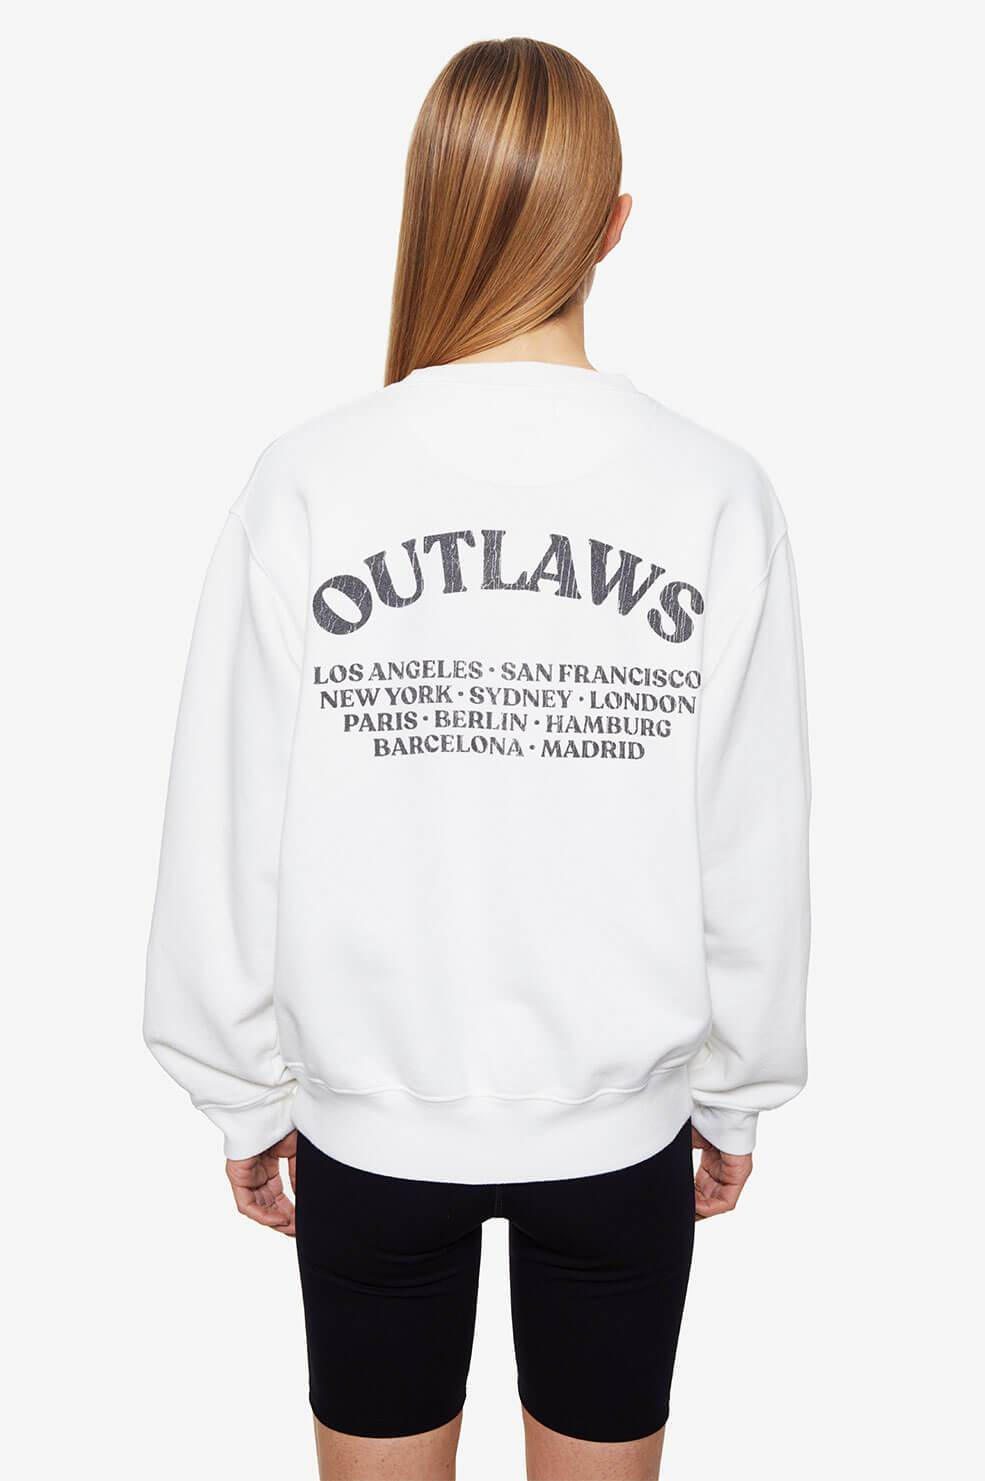 Sweats Anine Bing Ramona Sweatshirt Outlaw - White